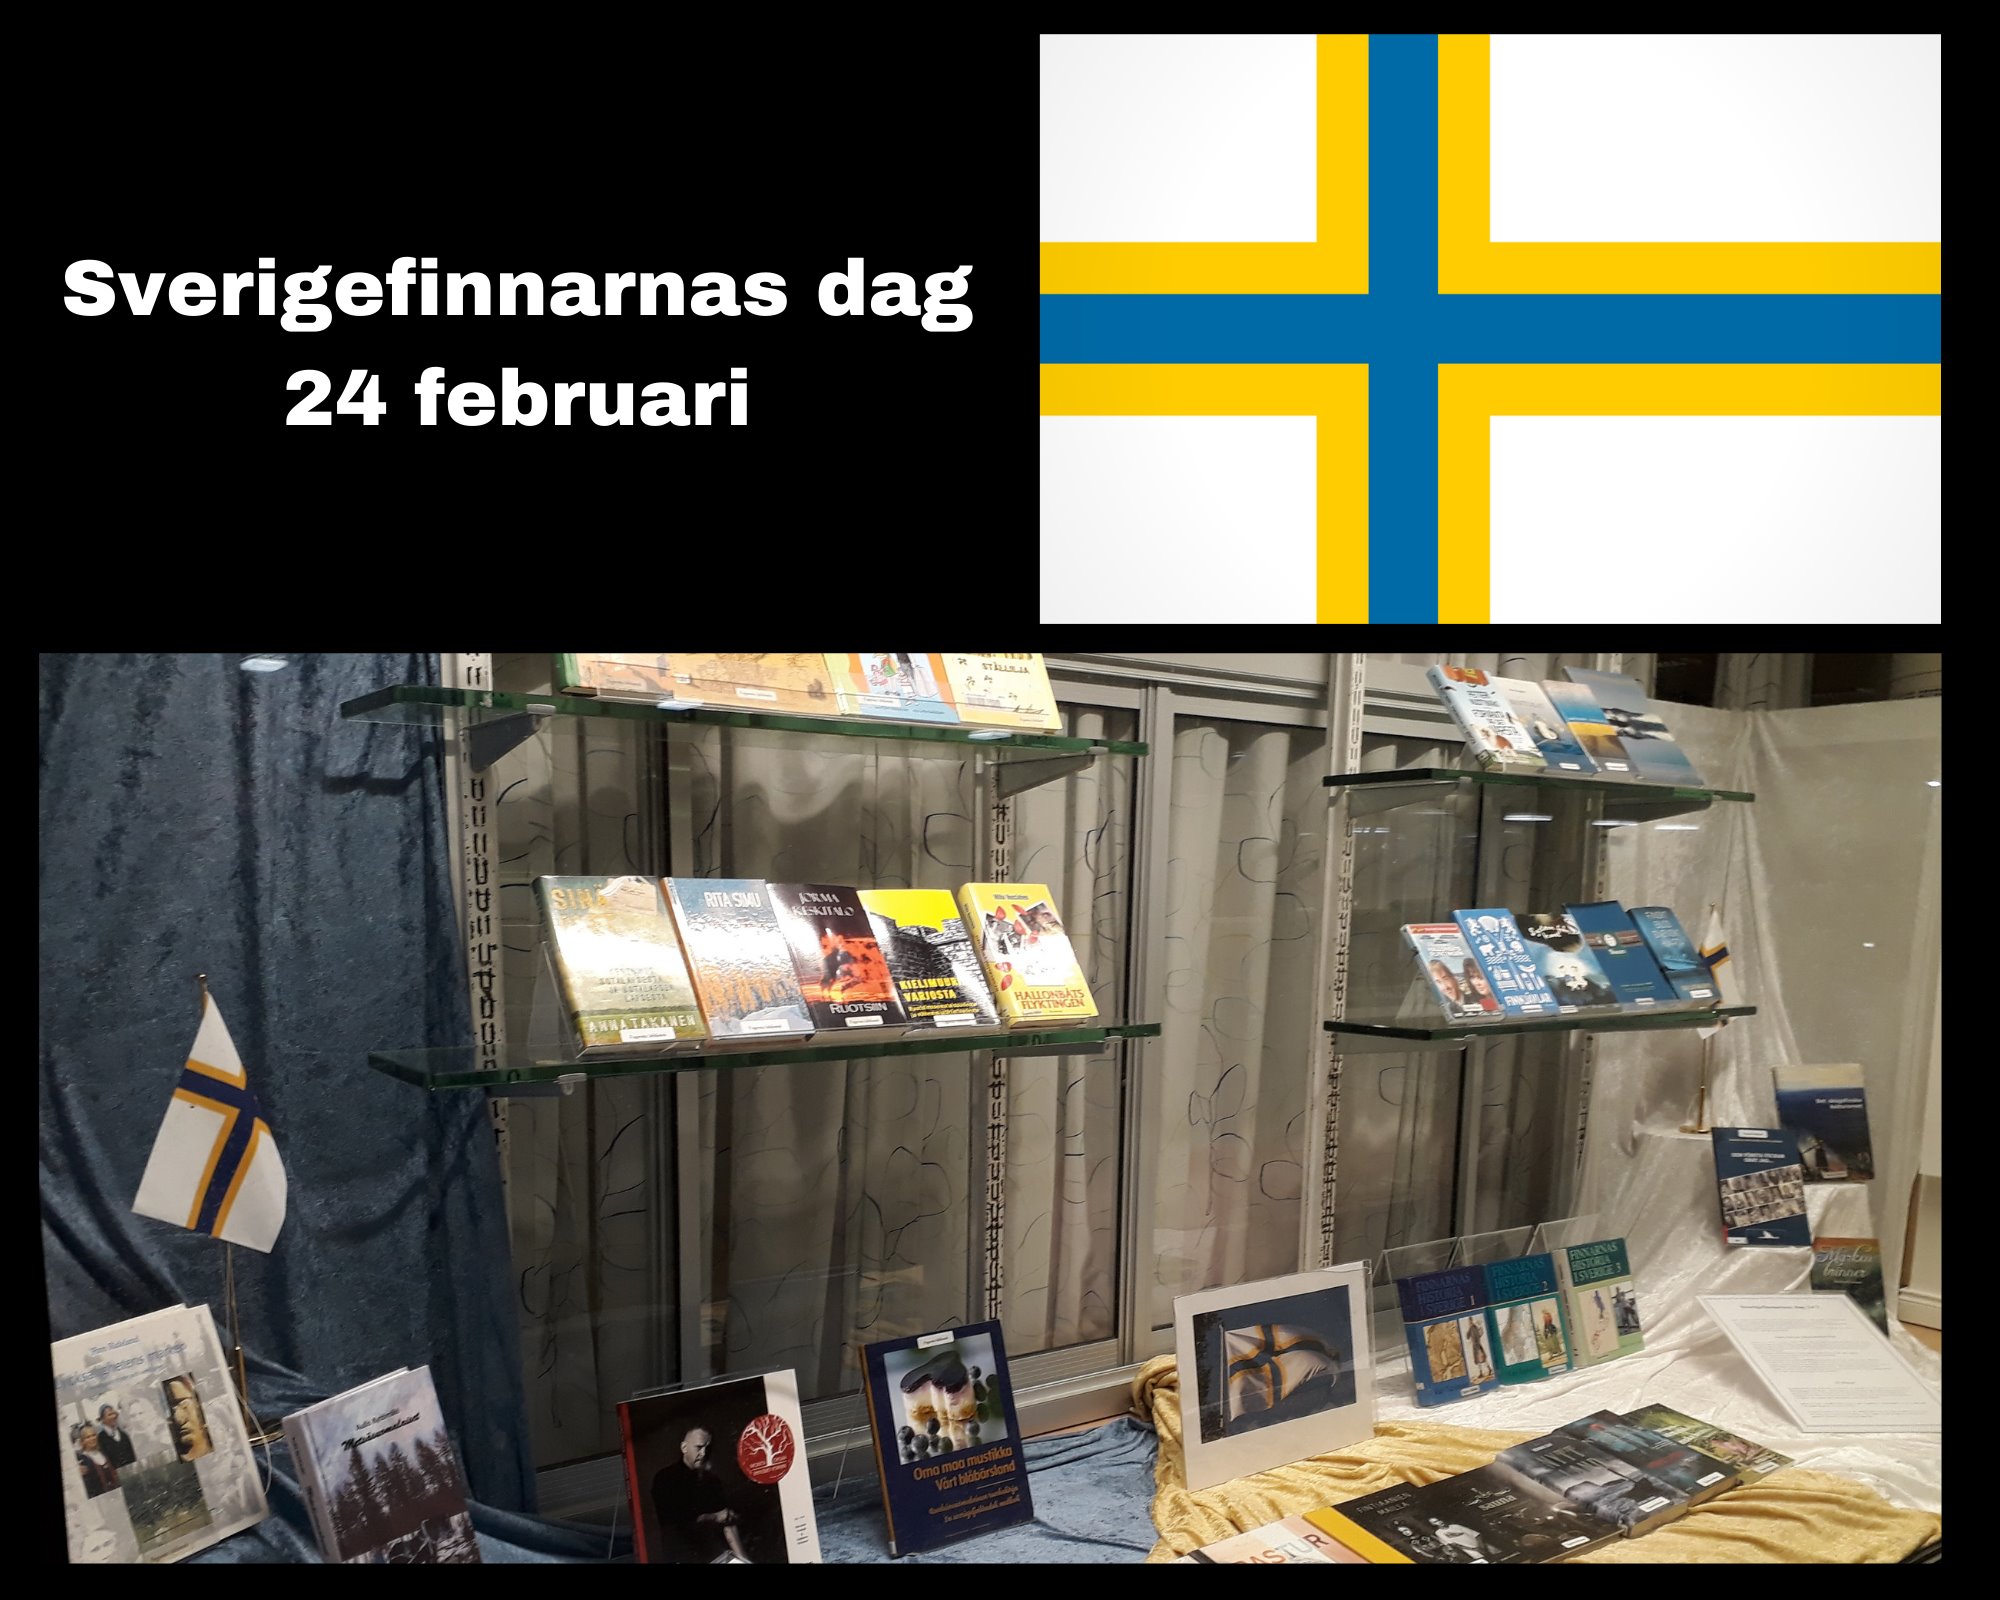 Utställning i skyltfönster. Böcker, sverigefinska flaggor mm